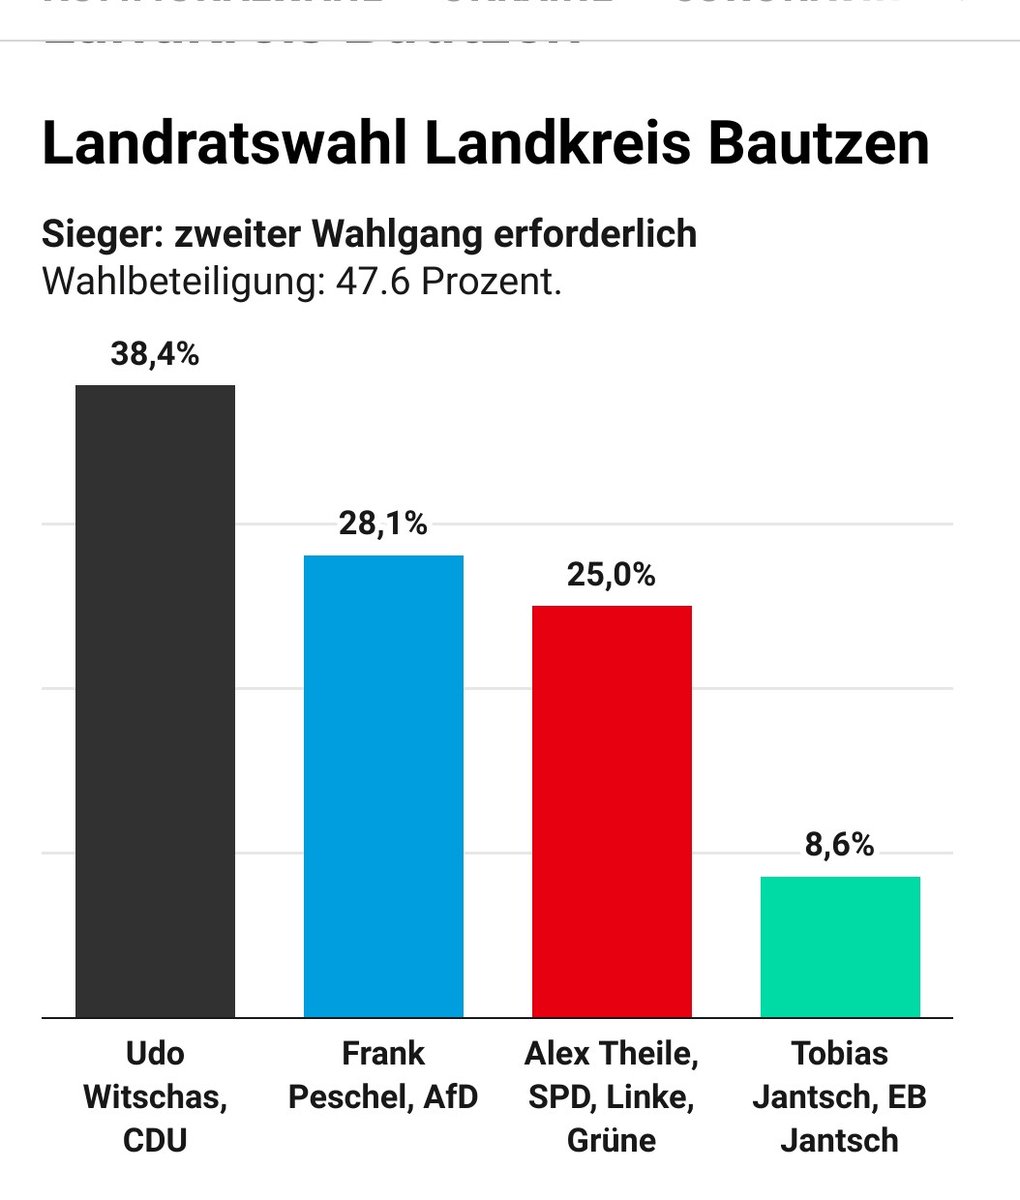 Gott sei Dank liegt das kleinere Übel @cdusachsen vorne. Leider nutzen wieder mal <50% ihre Chance der Demokratie. #LRWBZ22